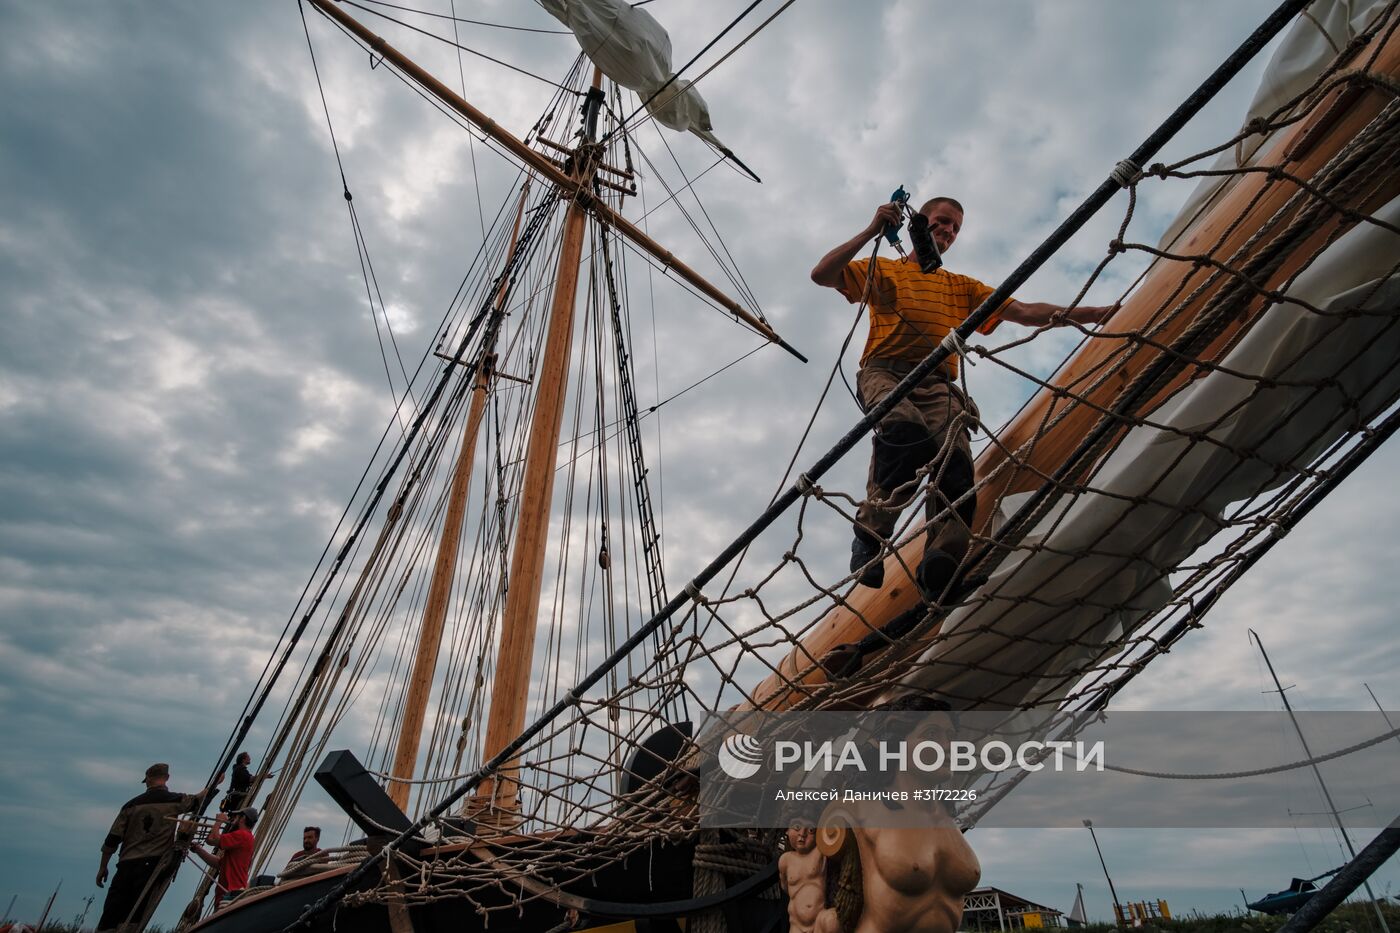 Воссоздание первого крупного корабля Российского военно-морского флота "Полтава" в Санкт-Петербурге